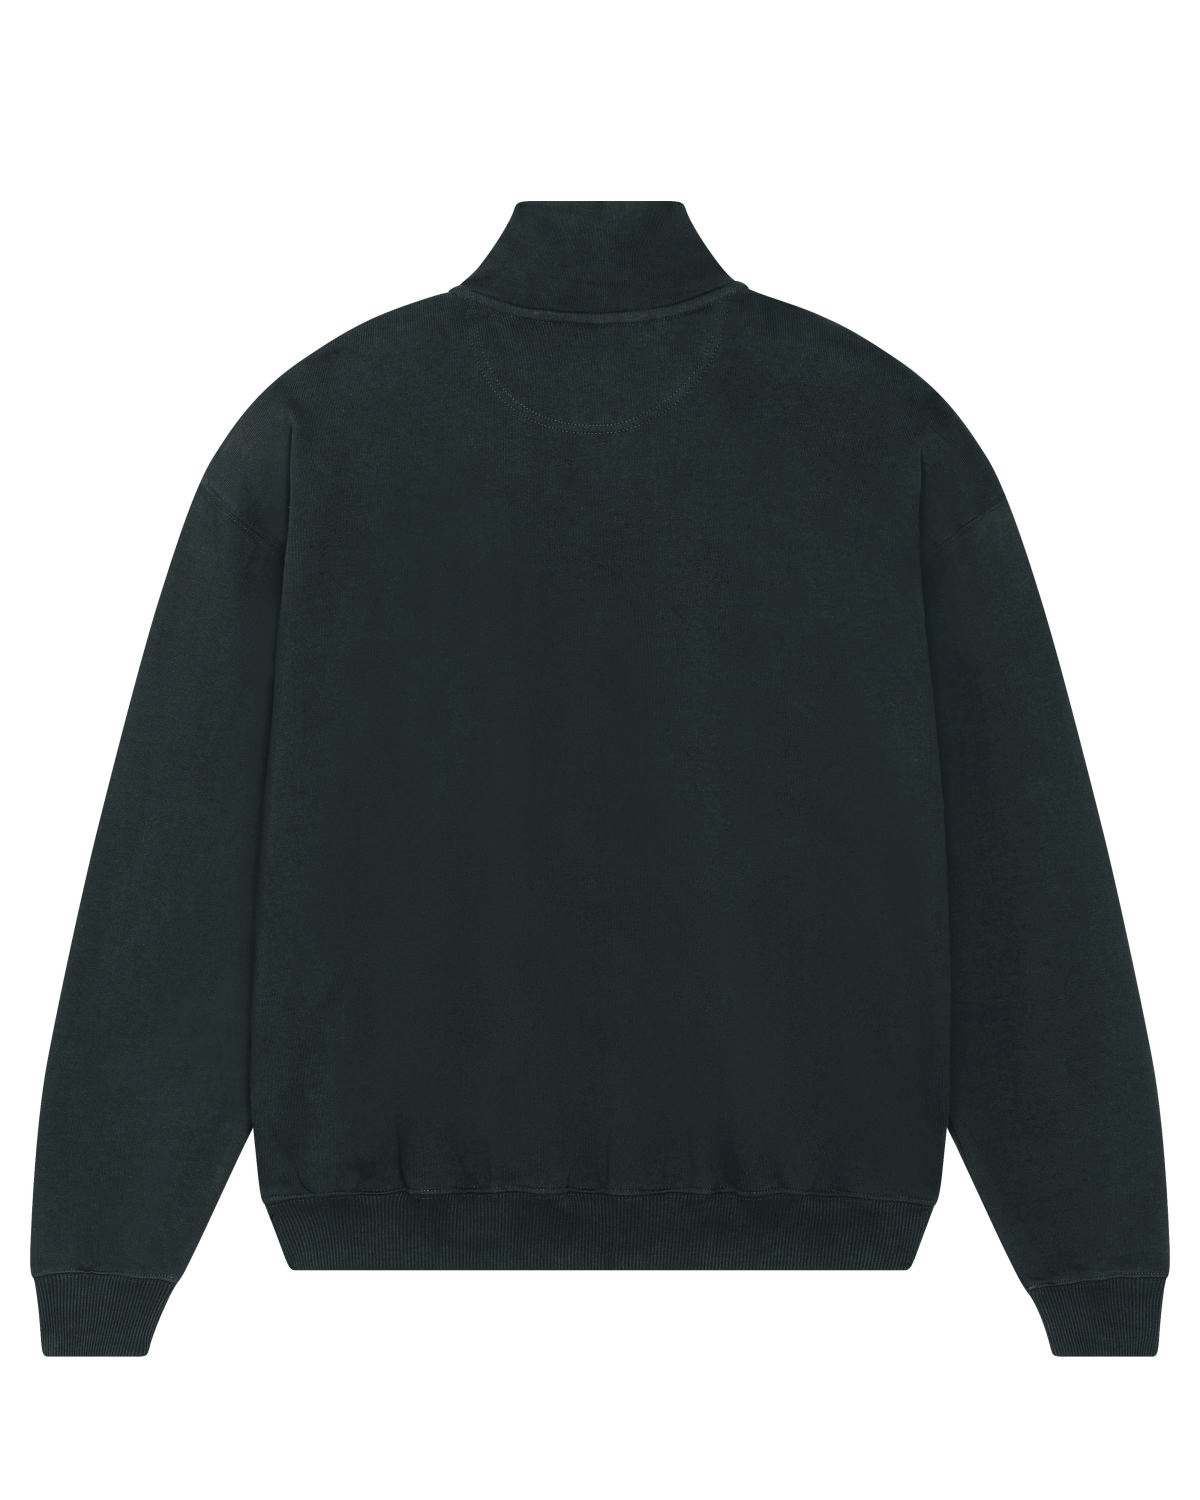 Half-Zip Sweater "Black"